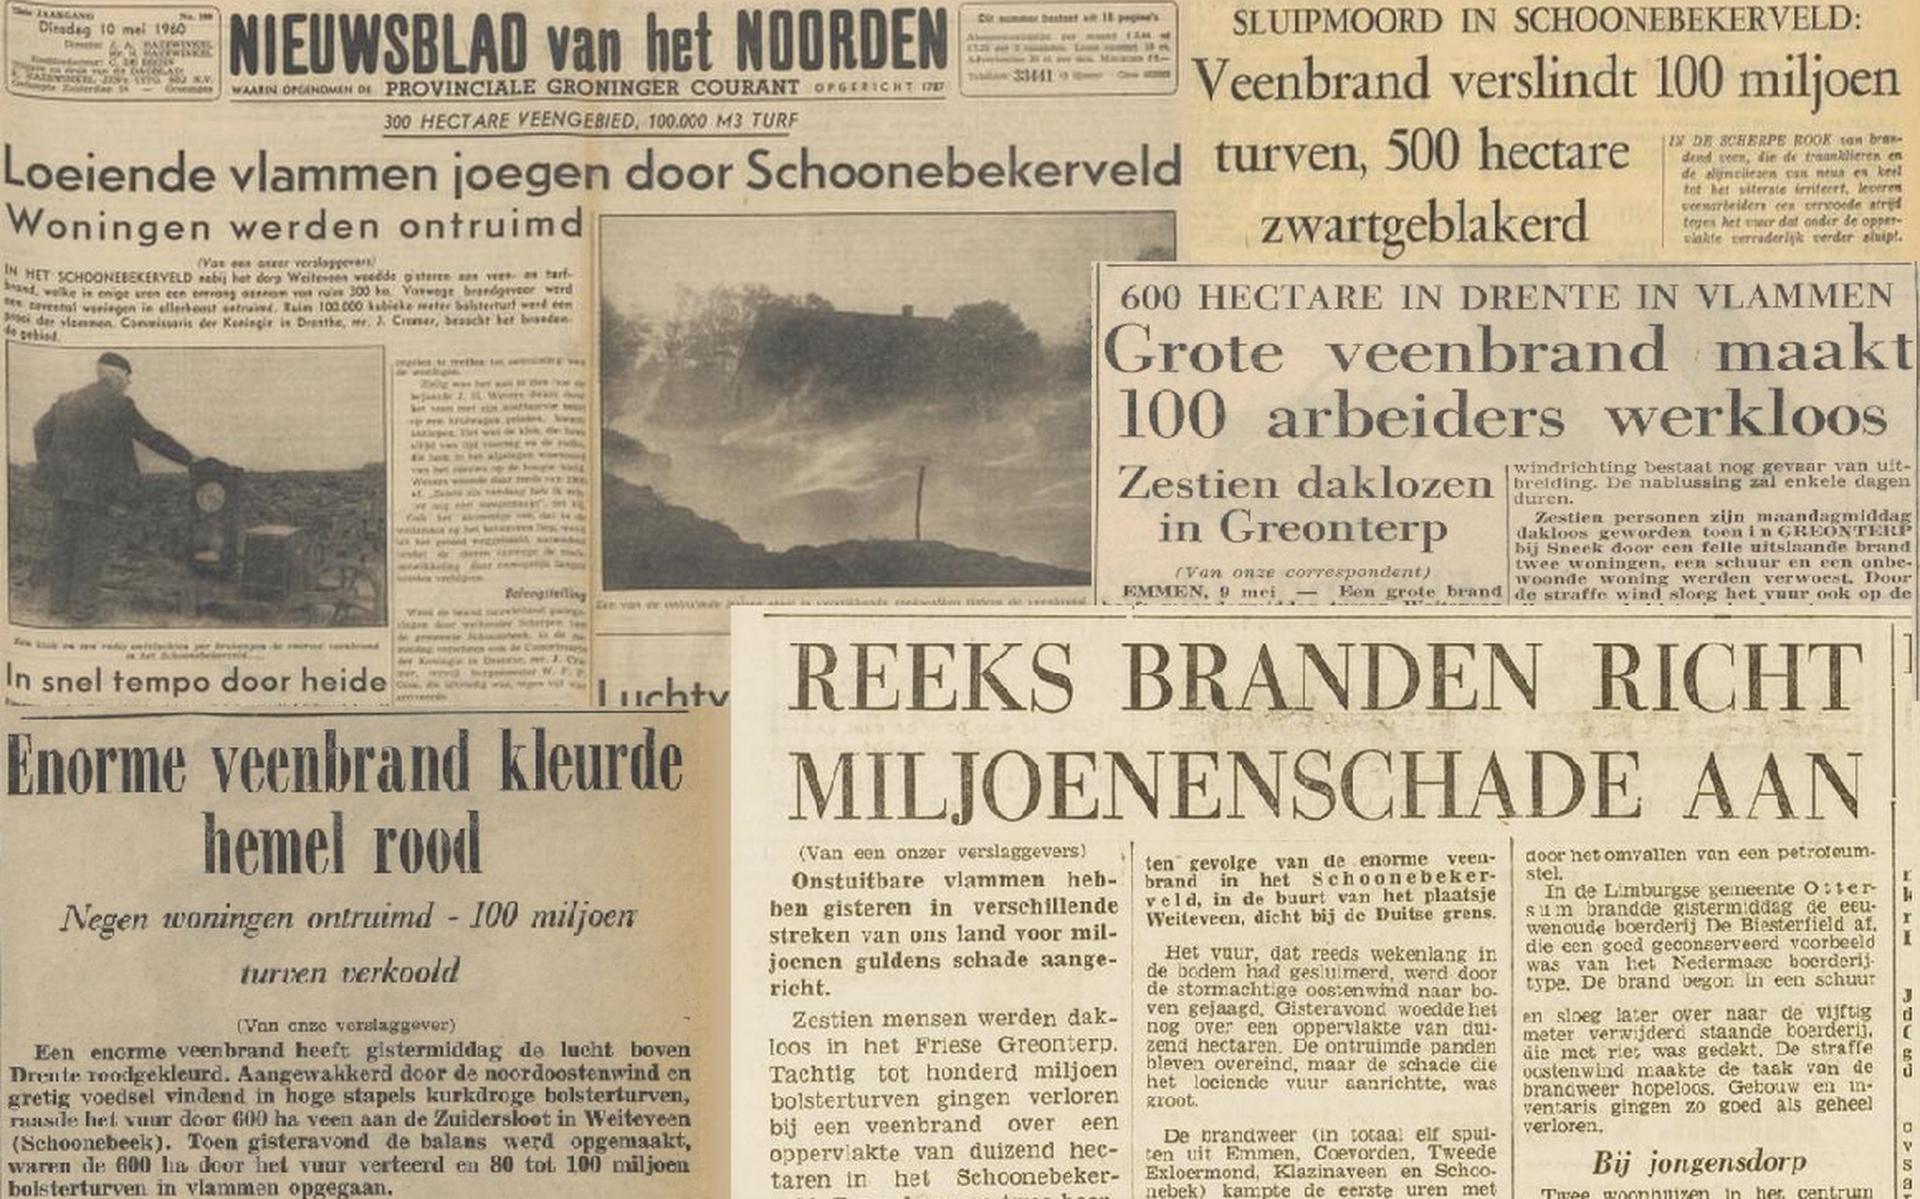 De kranten stonden vol met verhalen over de veenbrand op het Schoonebeekerveld in mei 1960.